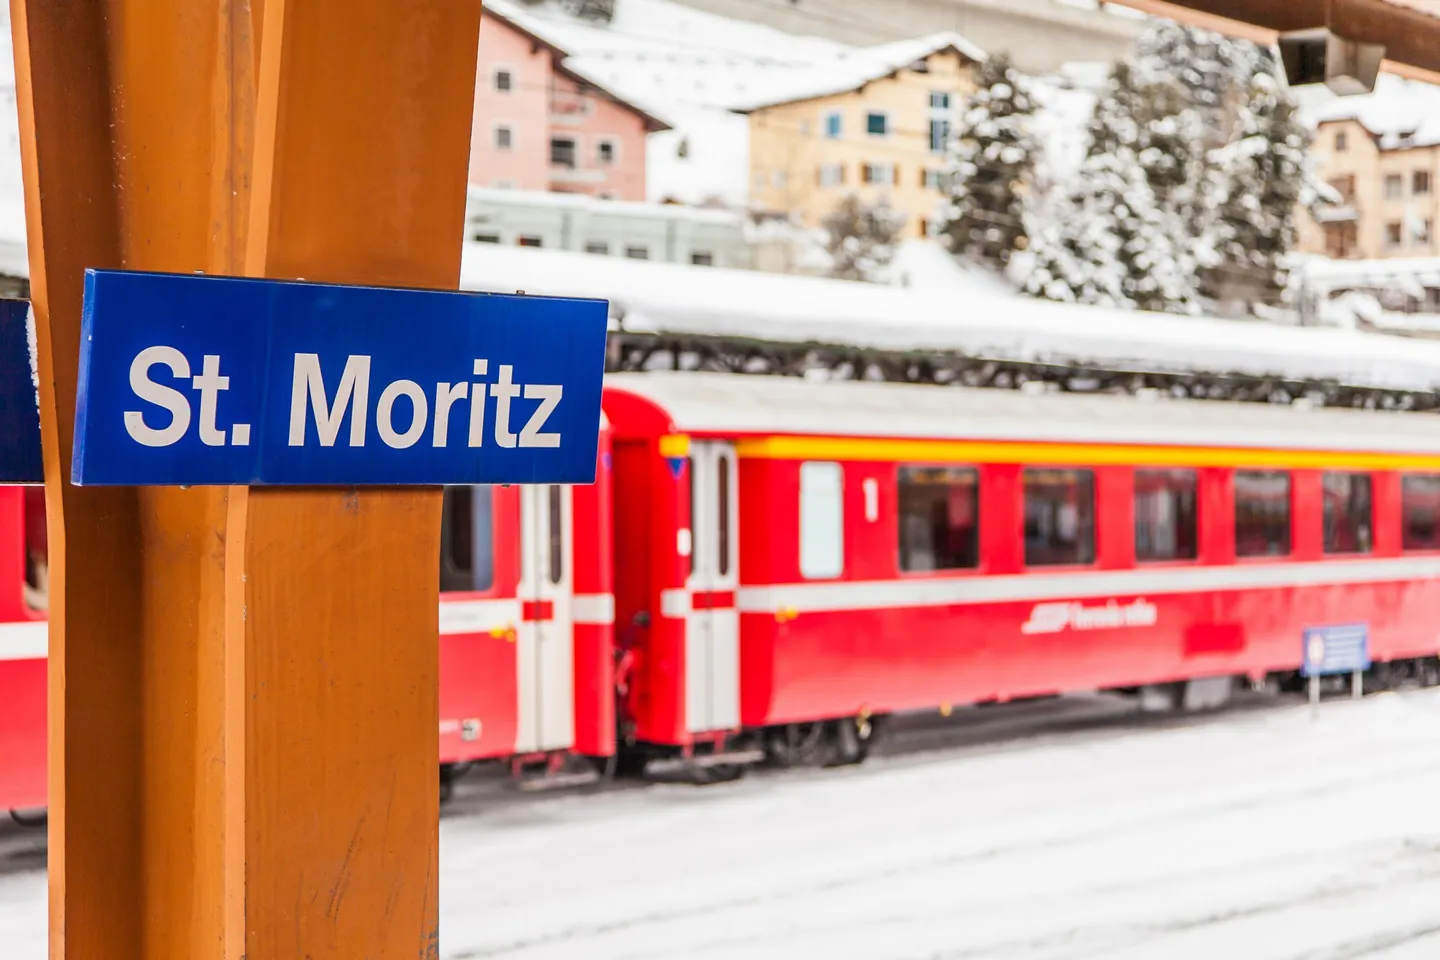 Station St. Moritz